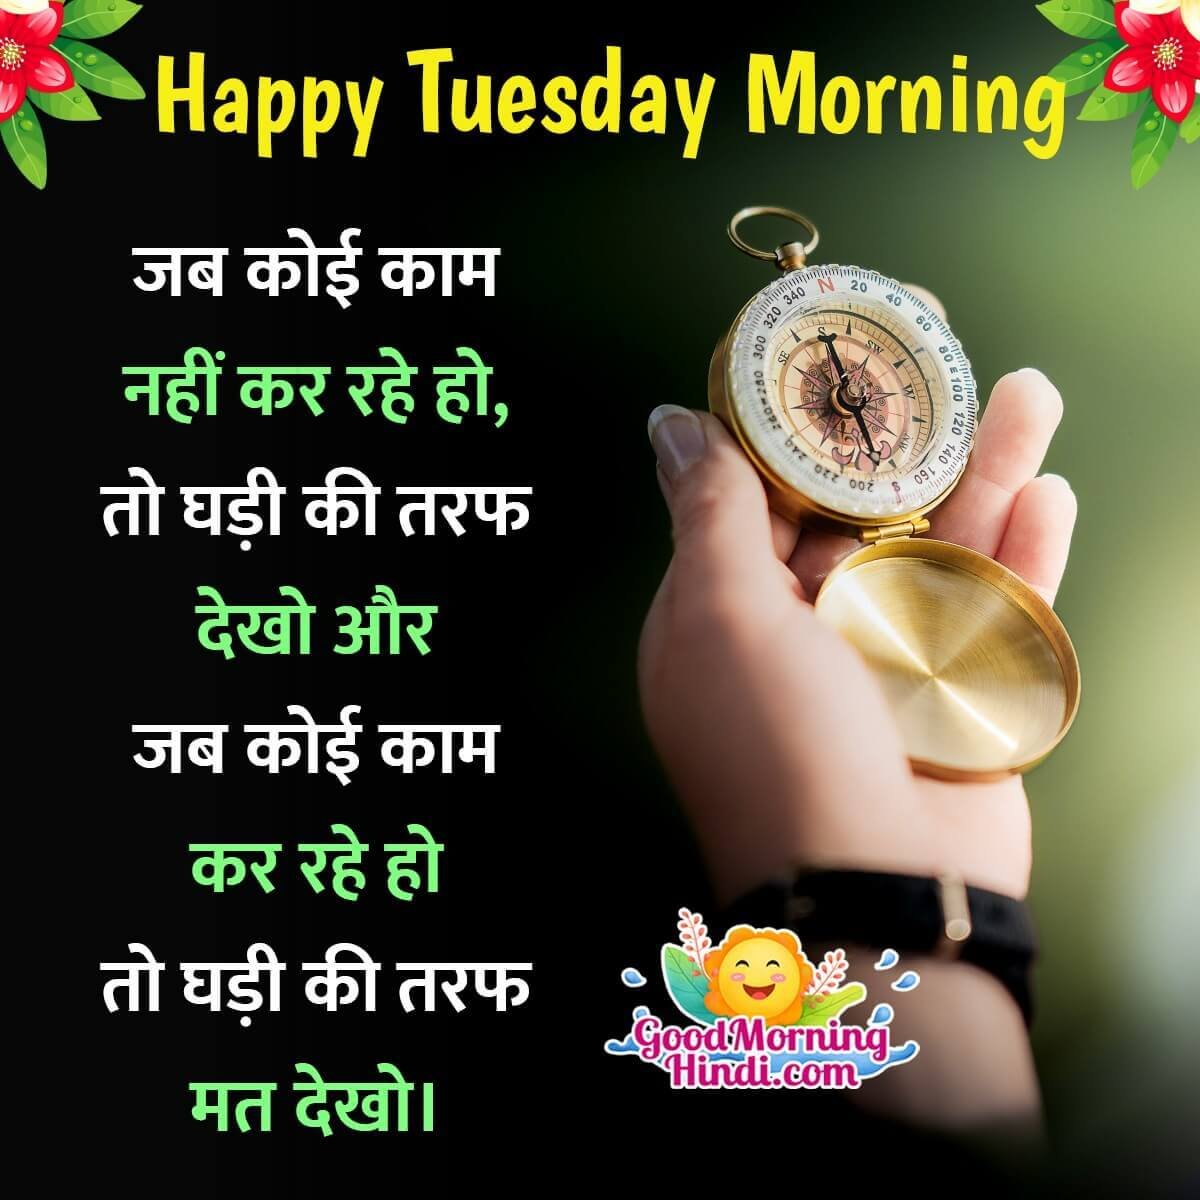 Good Morning Tuesday Hindi Message Pic